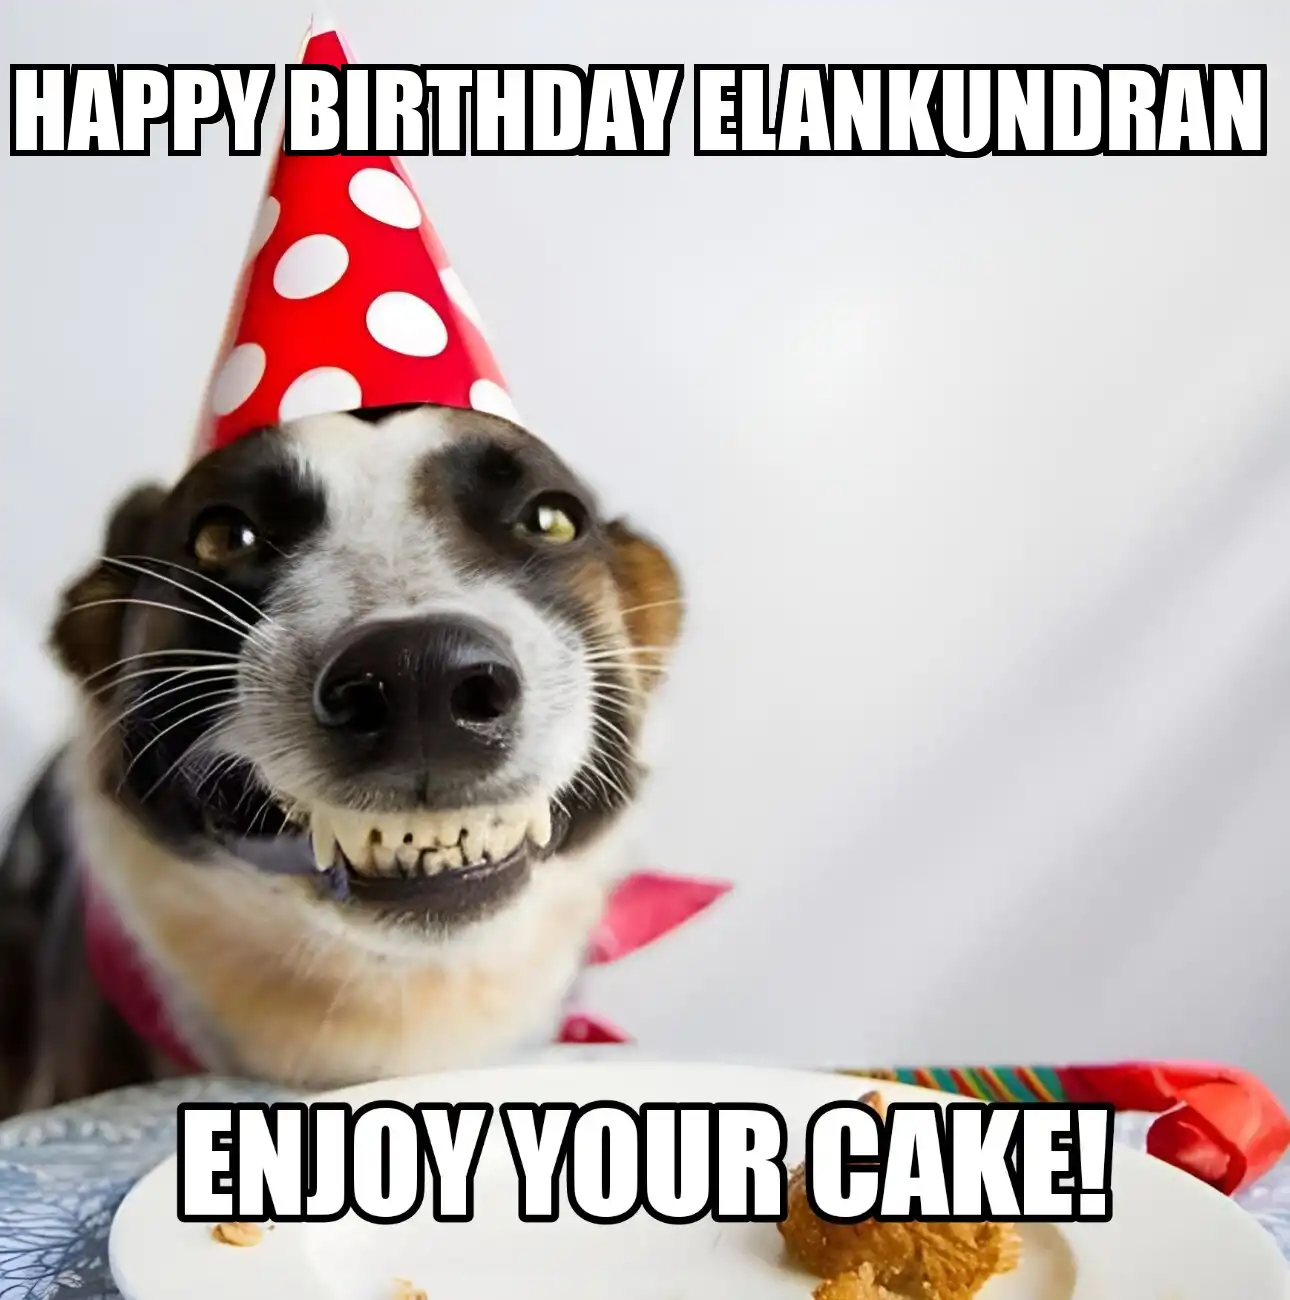 Happy Birthday Elankundran Enjoy Your Cake Dog Meme